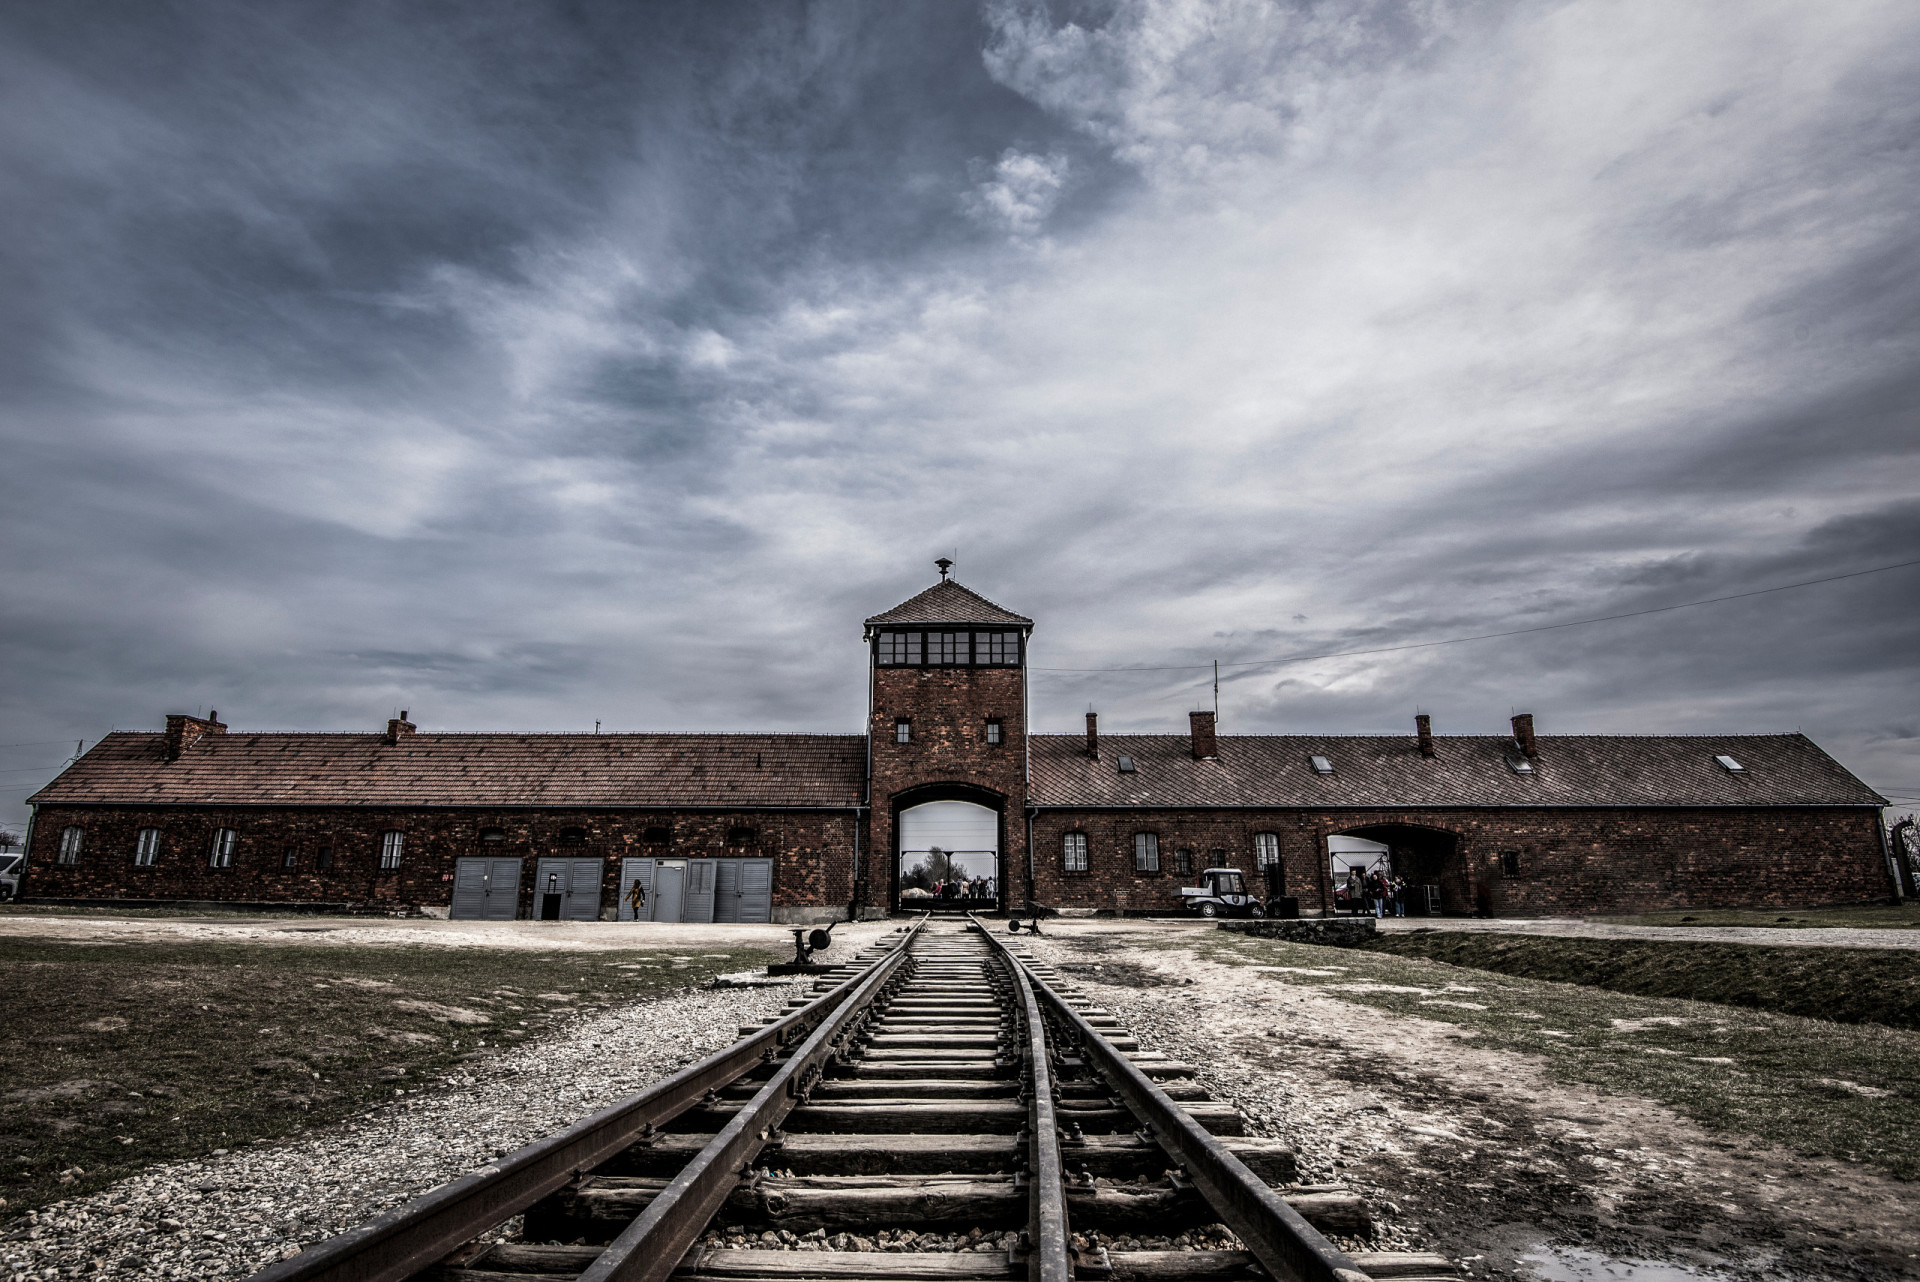 <p>Son nom même évoque des images d'horreur et de souffrance inimaginables. Auschwitz reste en effet l'une des destinations les plus tristement célèbres au monde. Et même ceux qui ont un moral d'acier ne peuvent s'empêcher de frémir à l'idée de ce qui s'y est passé !</p>